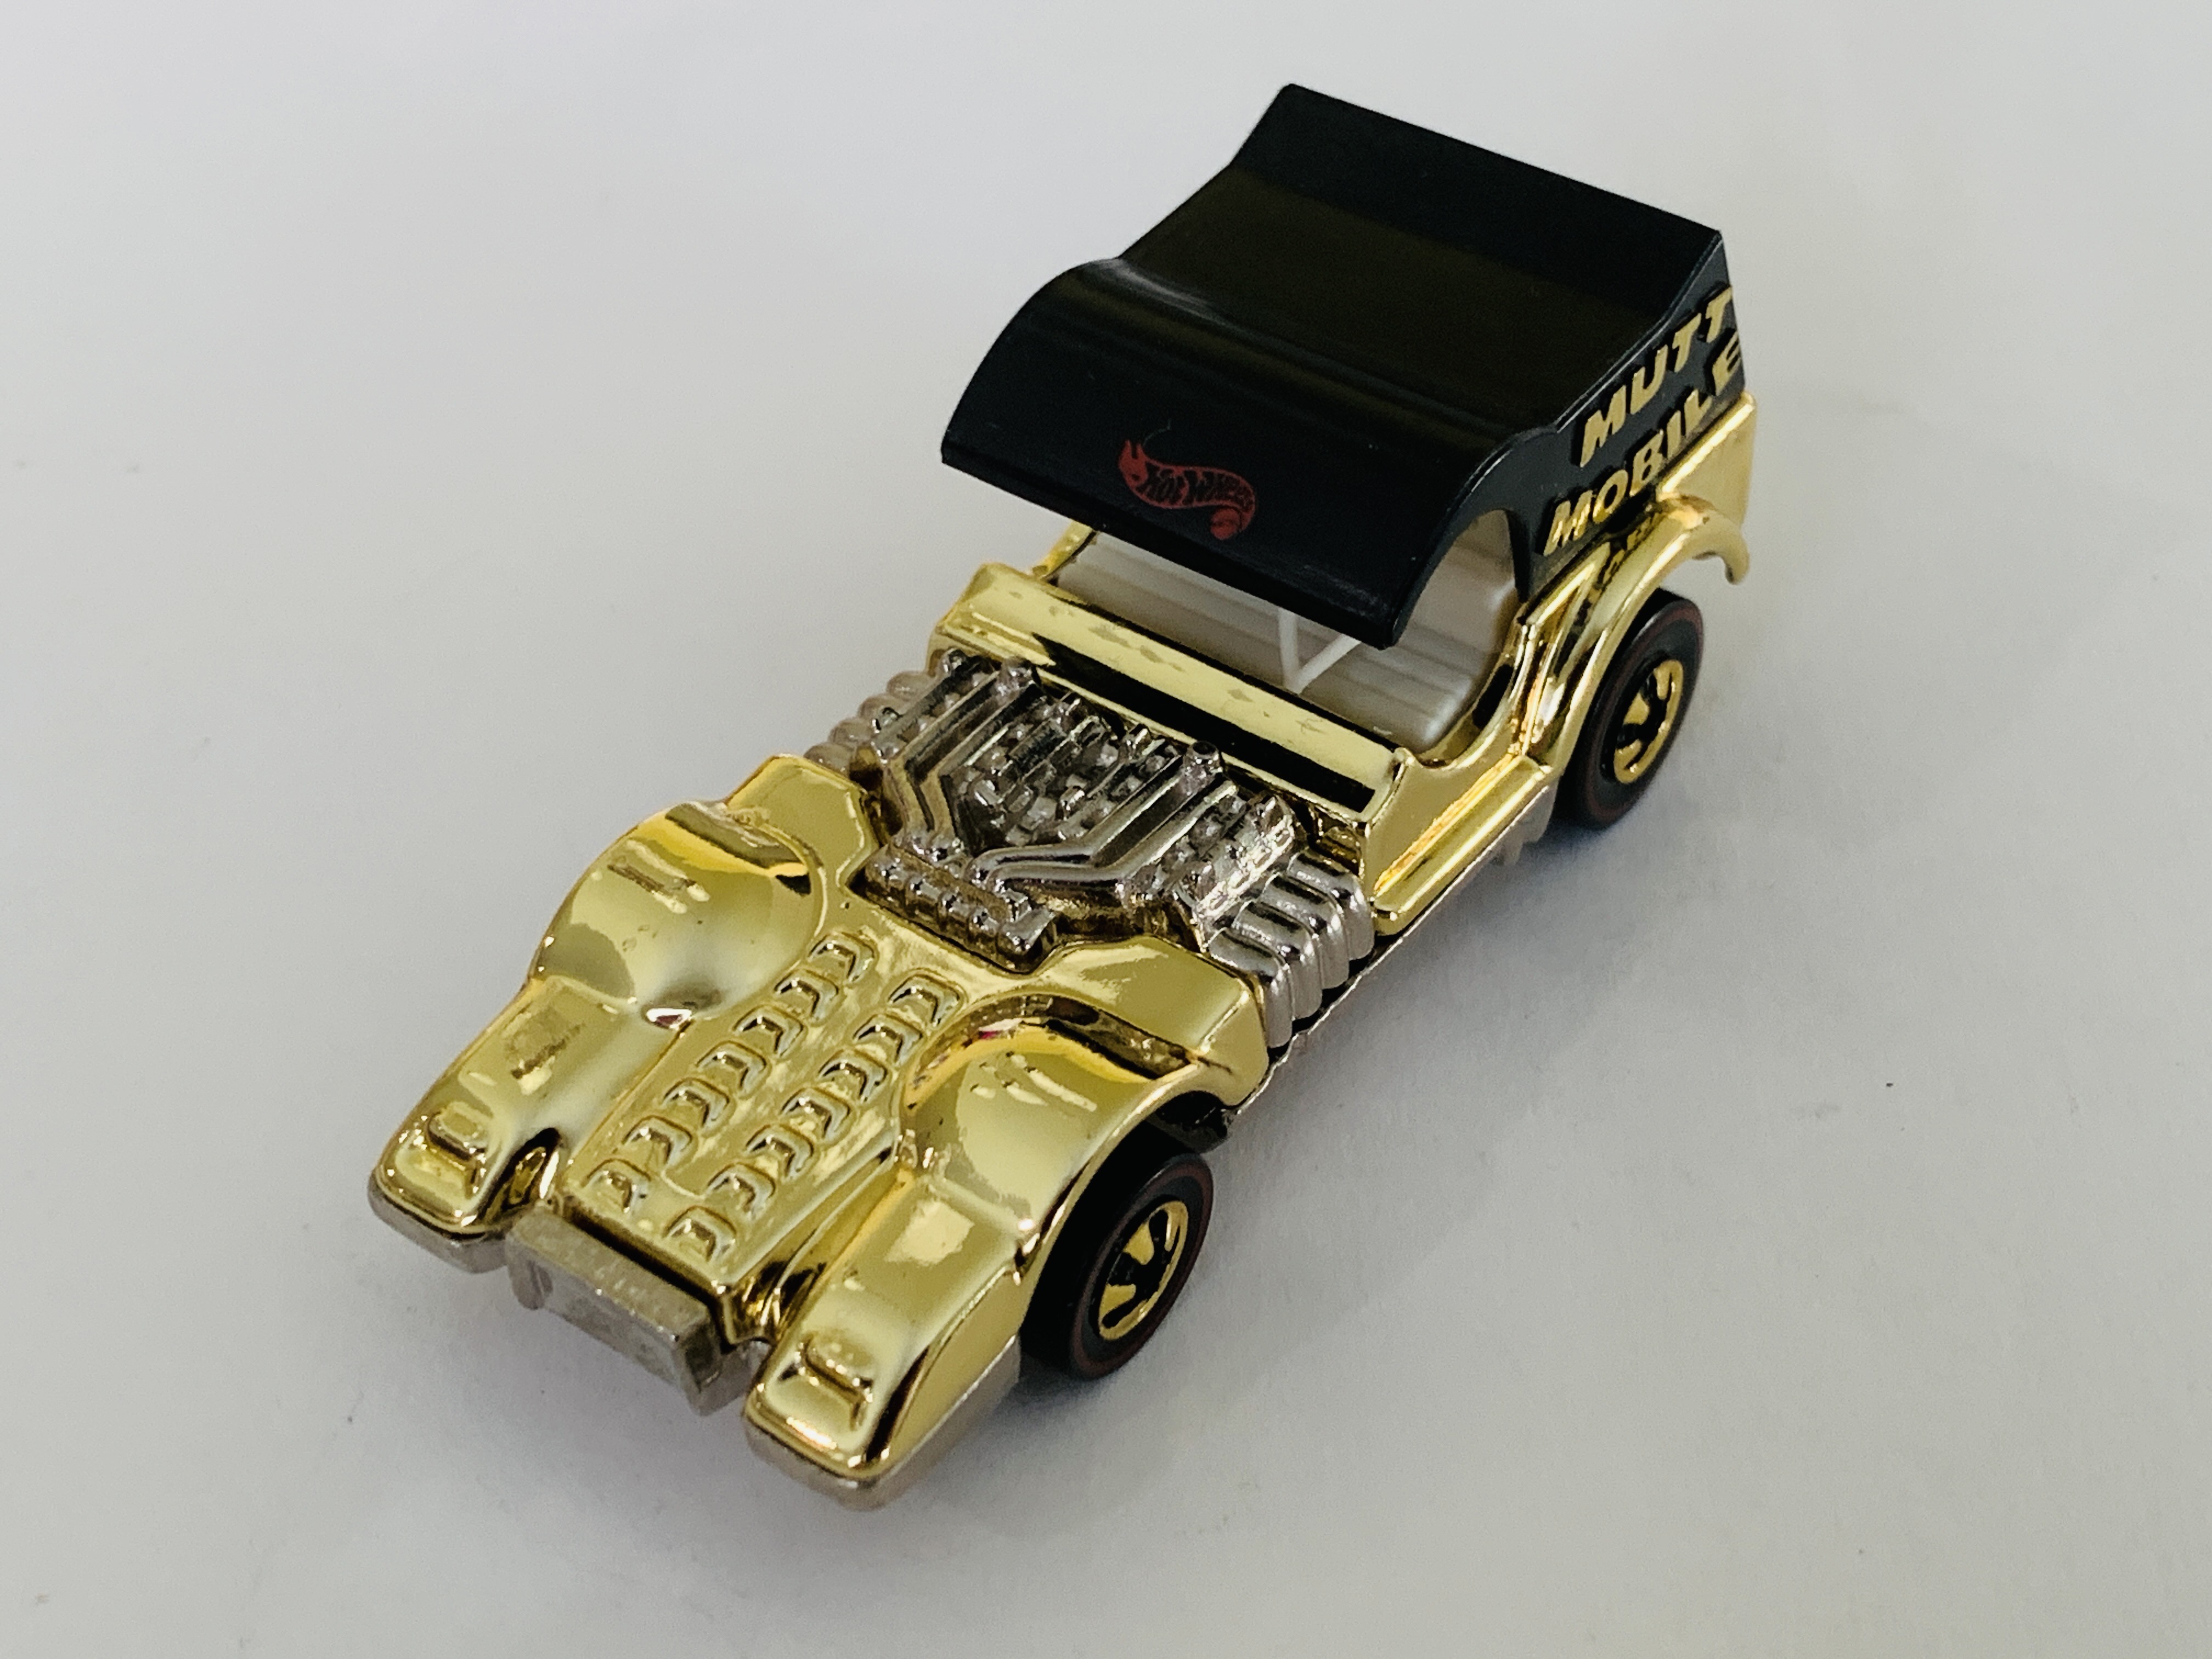 Hot Wheels FAO Schwarz Gold Series Mutt Mobile